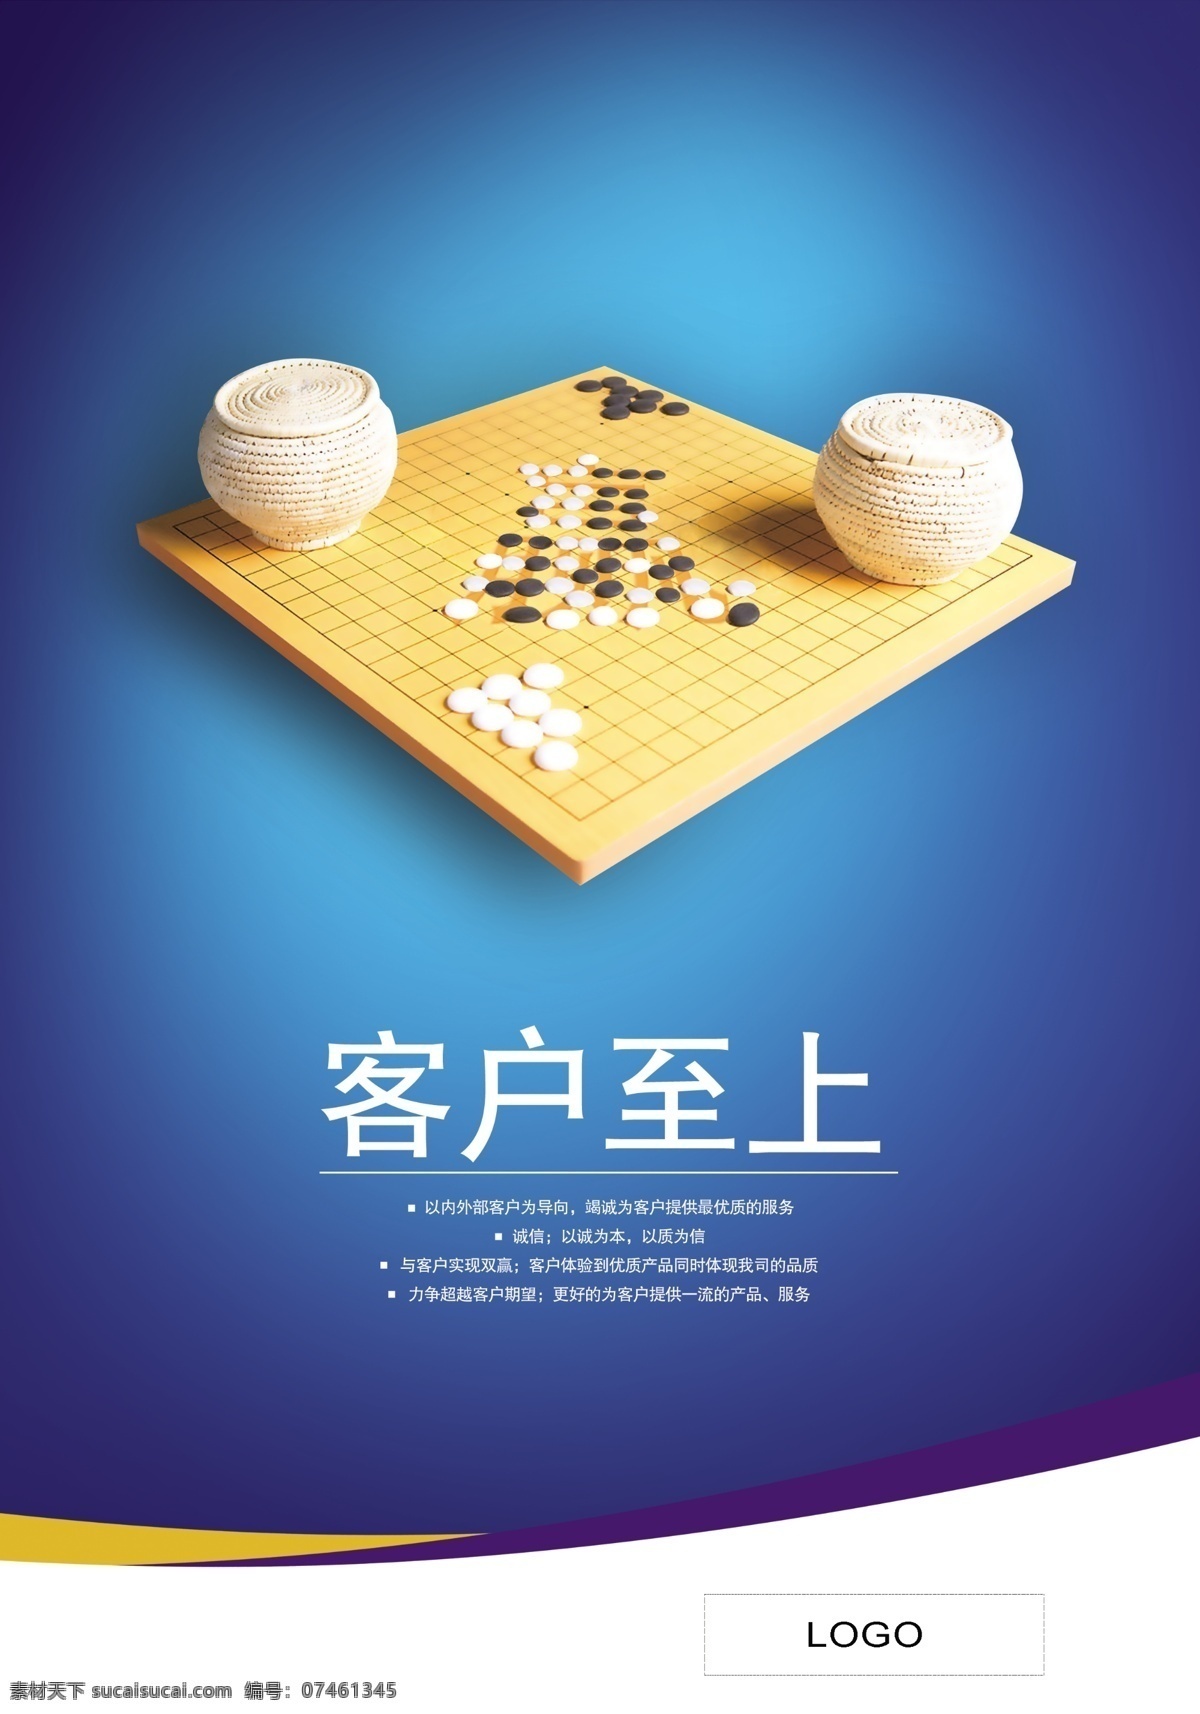 企业文化 服务理念 企业服务宣传 服务标语 围棋 棋盘 棋子 企业标语宣传